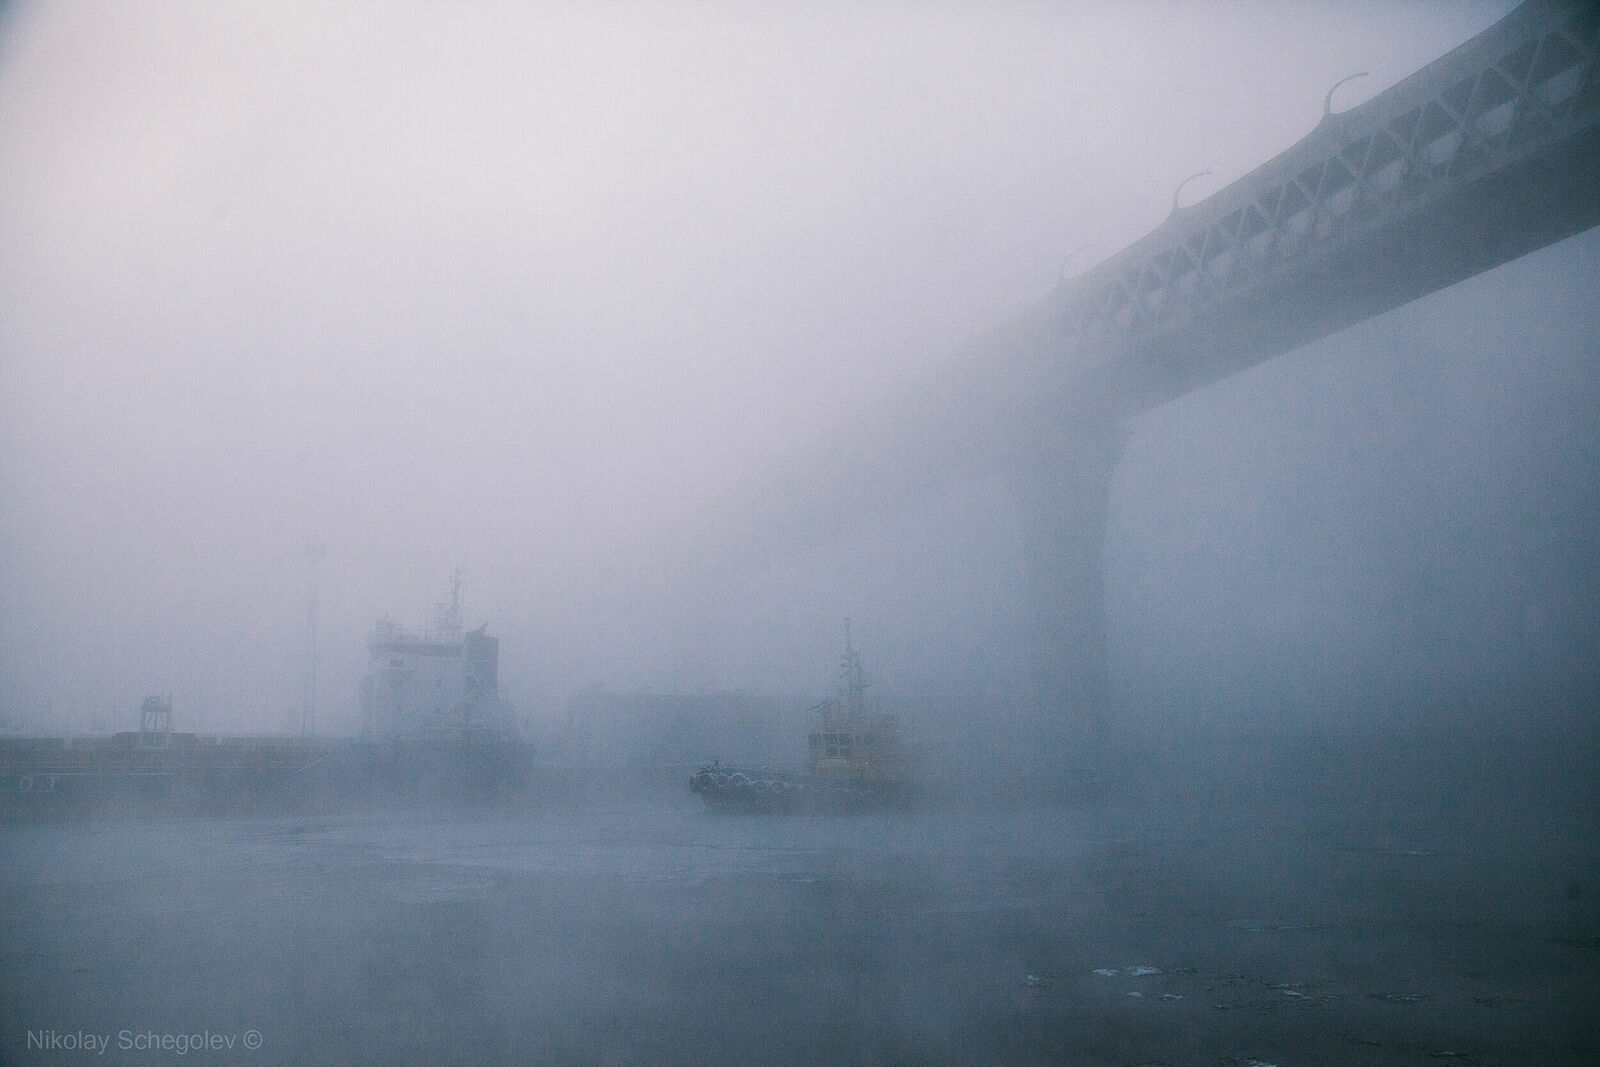 Условиях сильного тумана. Санкт-Петербург туман. Военный корабль в тумане. Судно в тумане. Сильный туман.